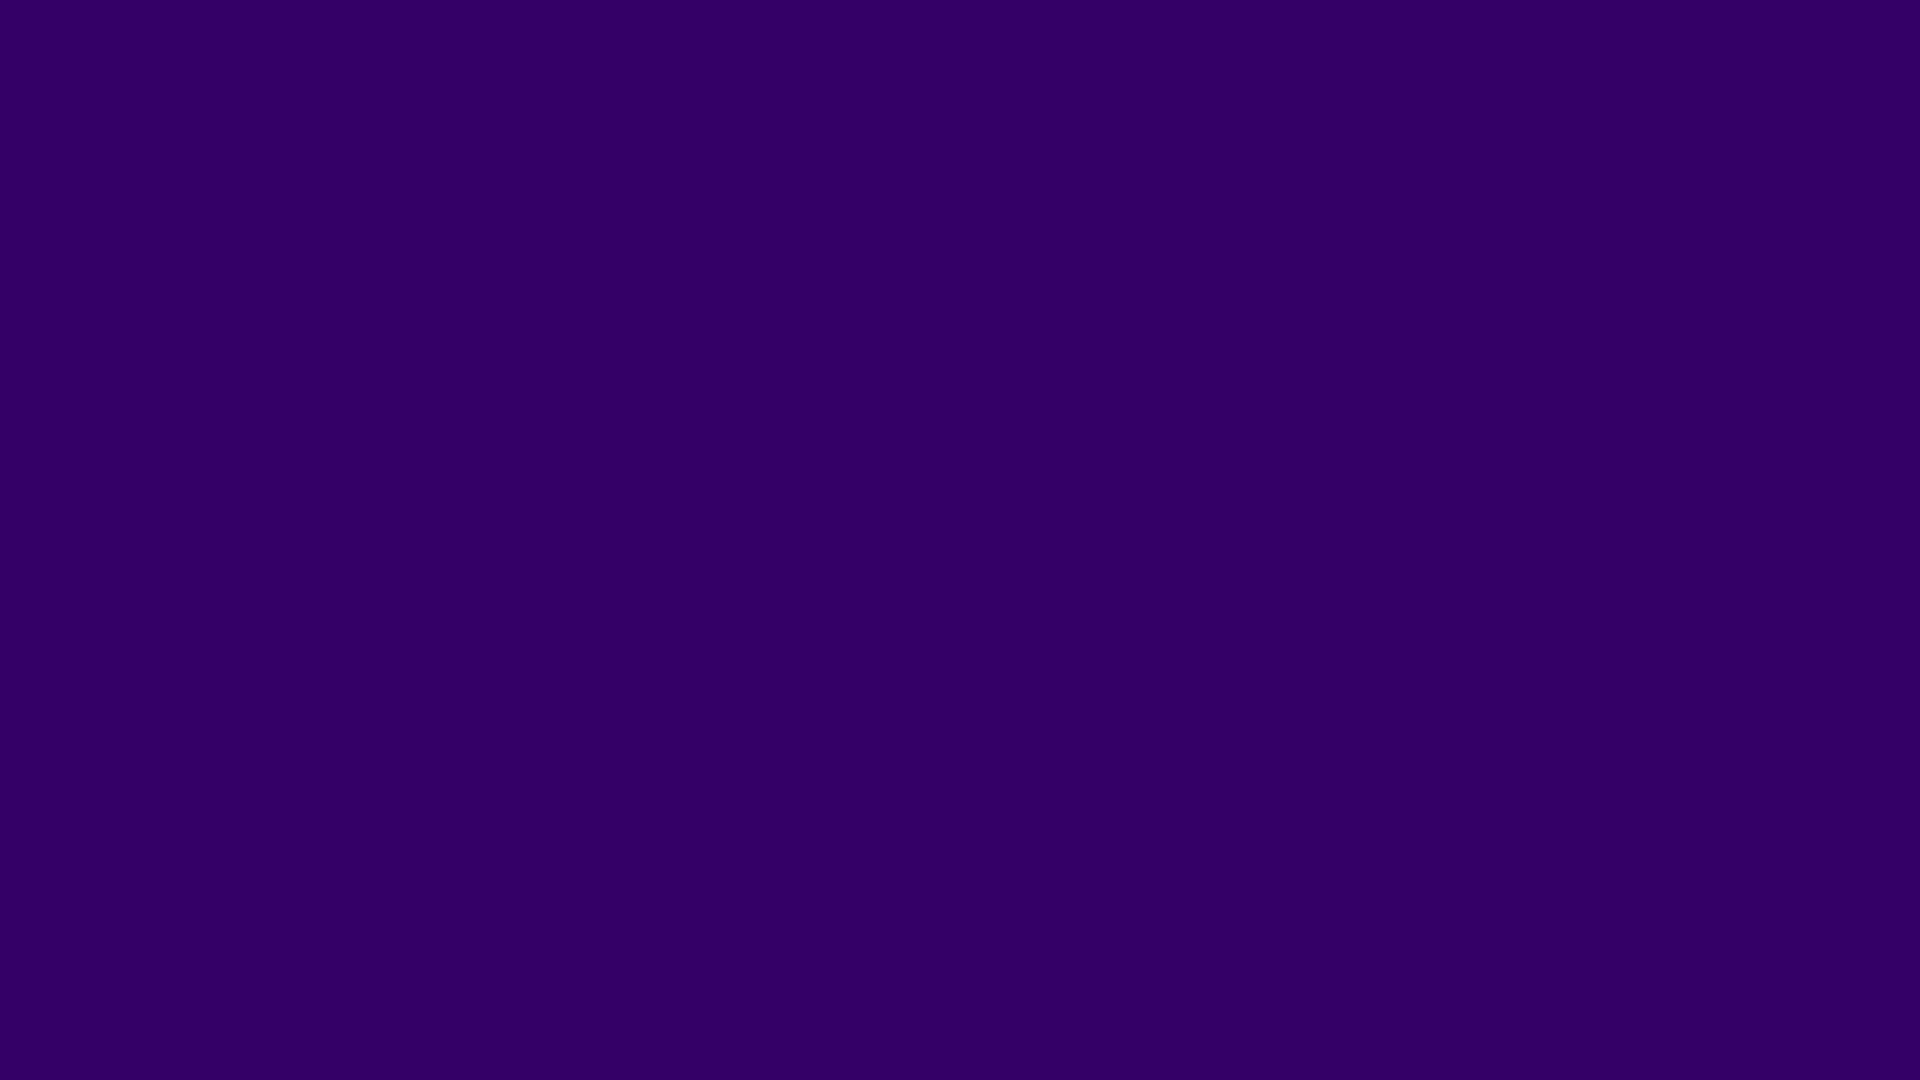 Deep Matte Violet Background